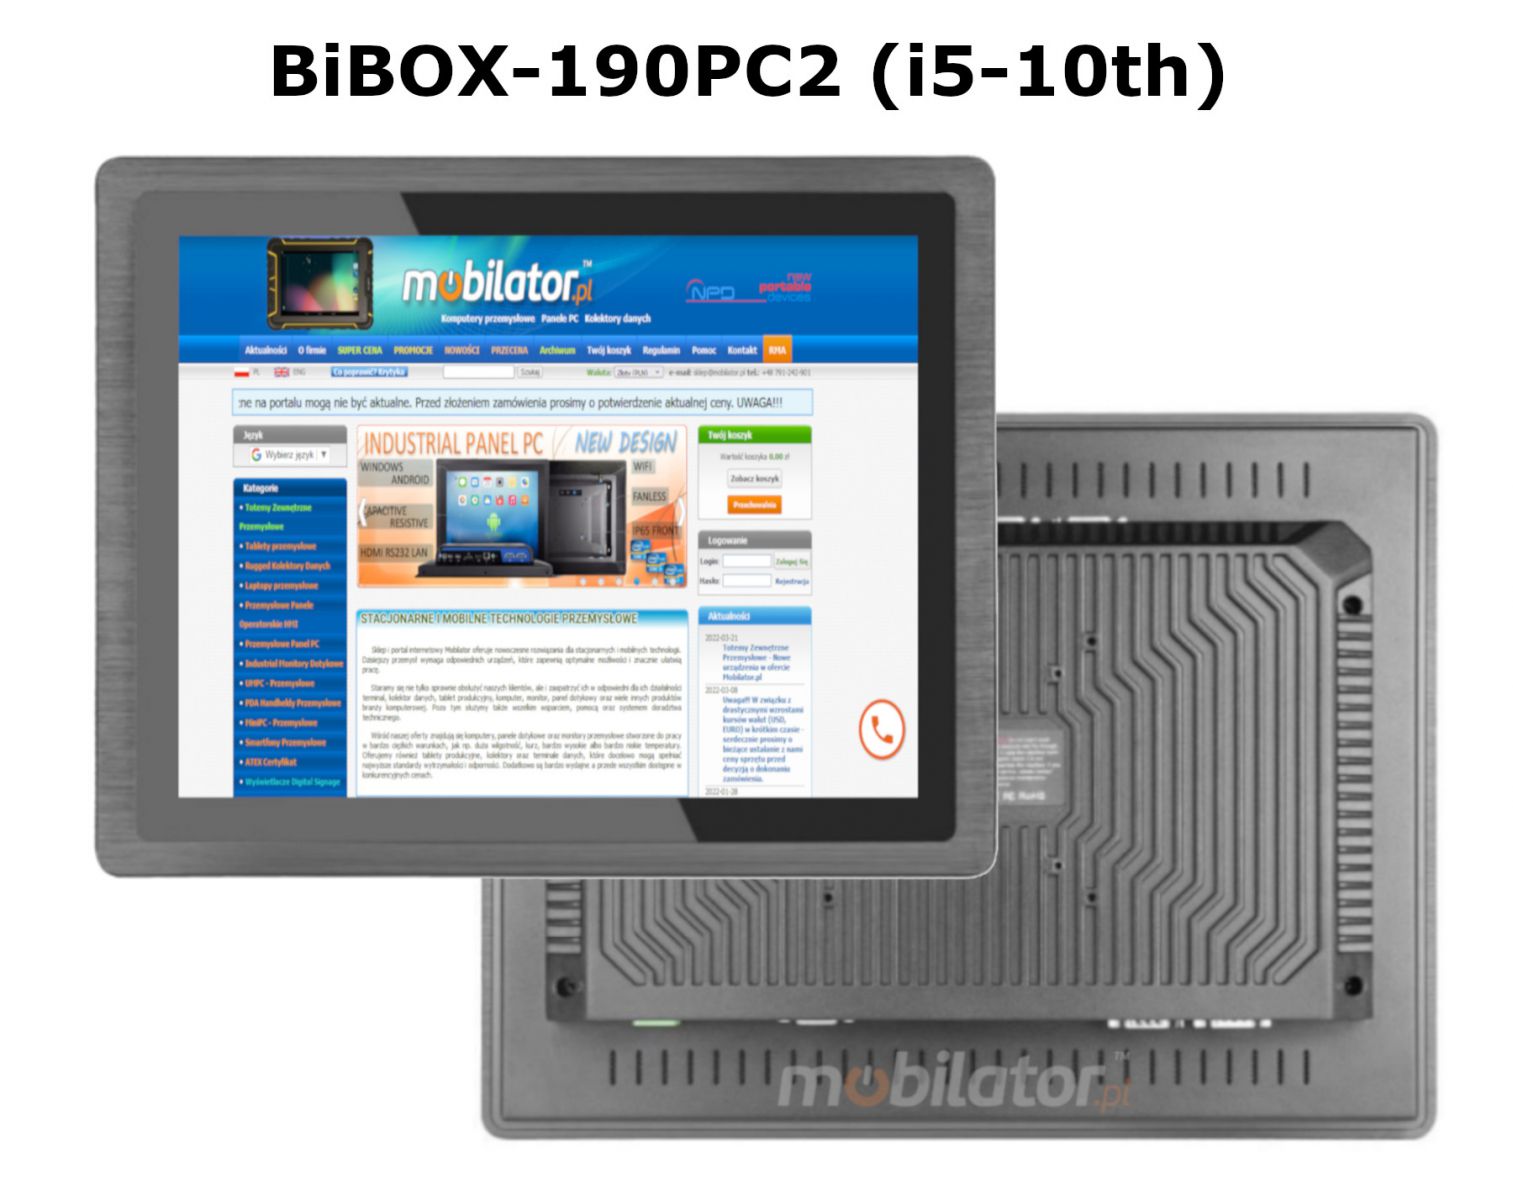 BIBOX-190PC2 odporny dobry wydajny komputer panelowy